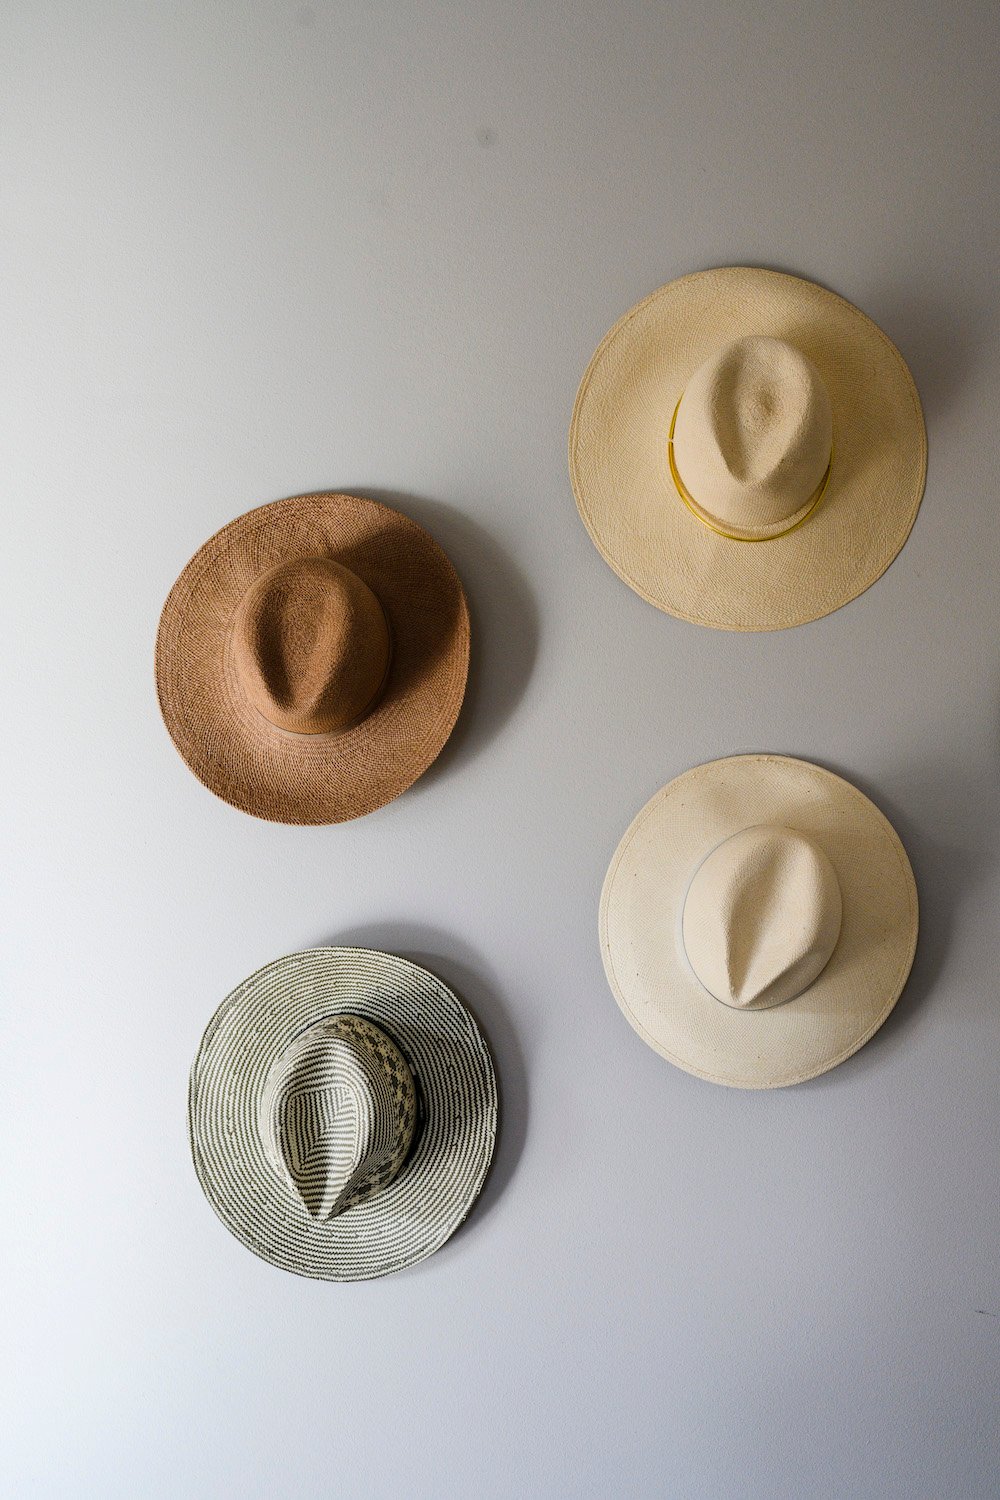 hats, wall decor